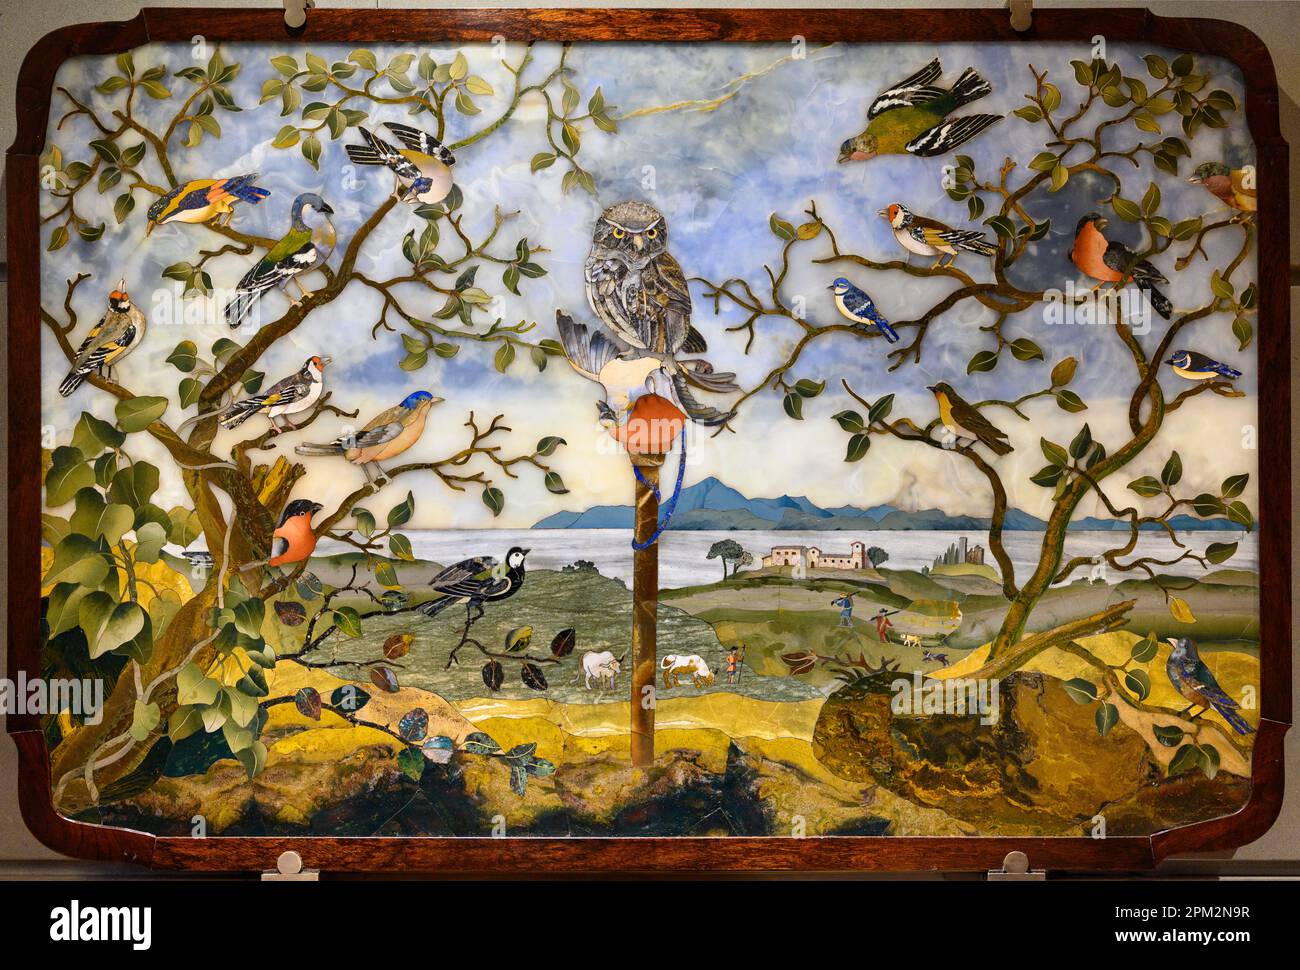 Florence. Italie. Musée de l'Opificio delle pietre dure (atelier de pierres semi-précieuses). Table avec hibou et oiseaux dans un paysage, 17th centur Banque D'Images